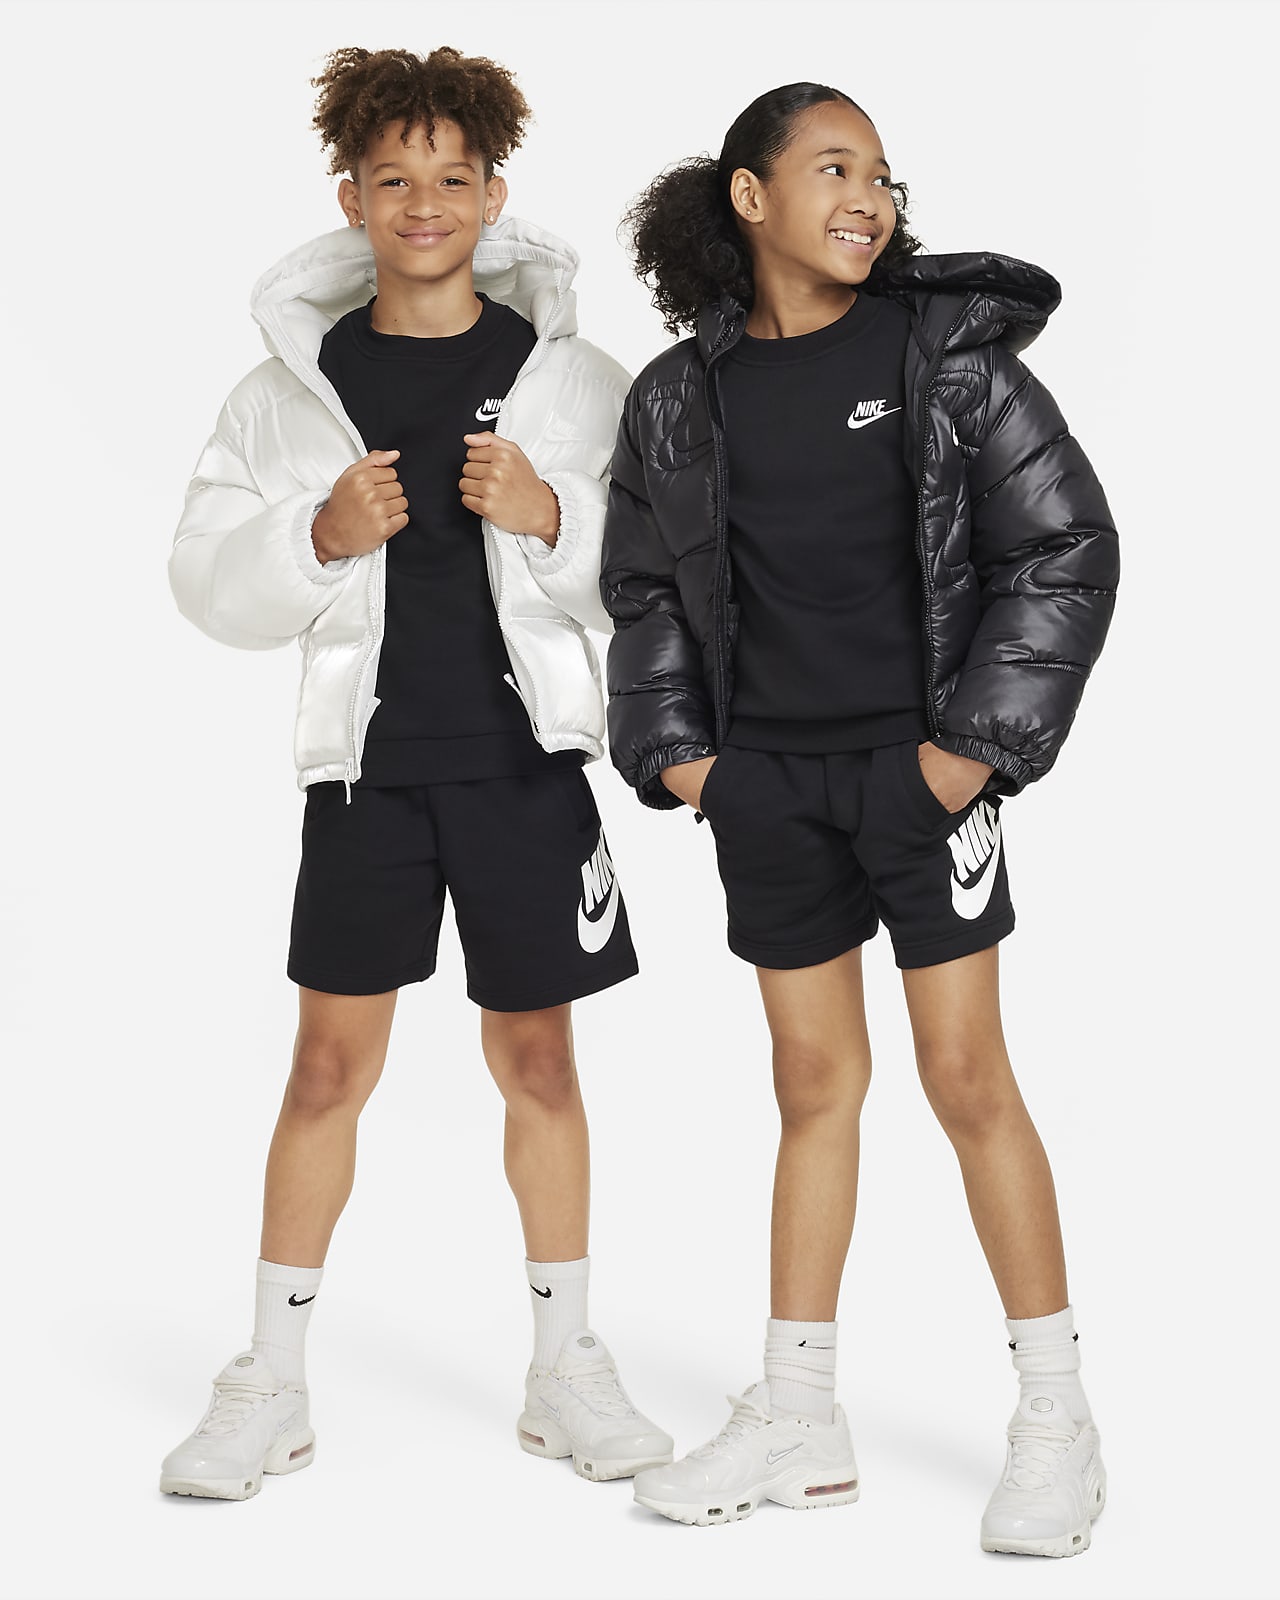 Club Older Sweatshirt. Sportswear LU Kids\' Nike Fleece Nike